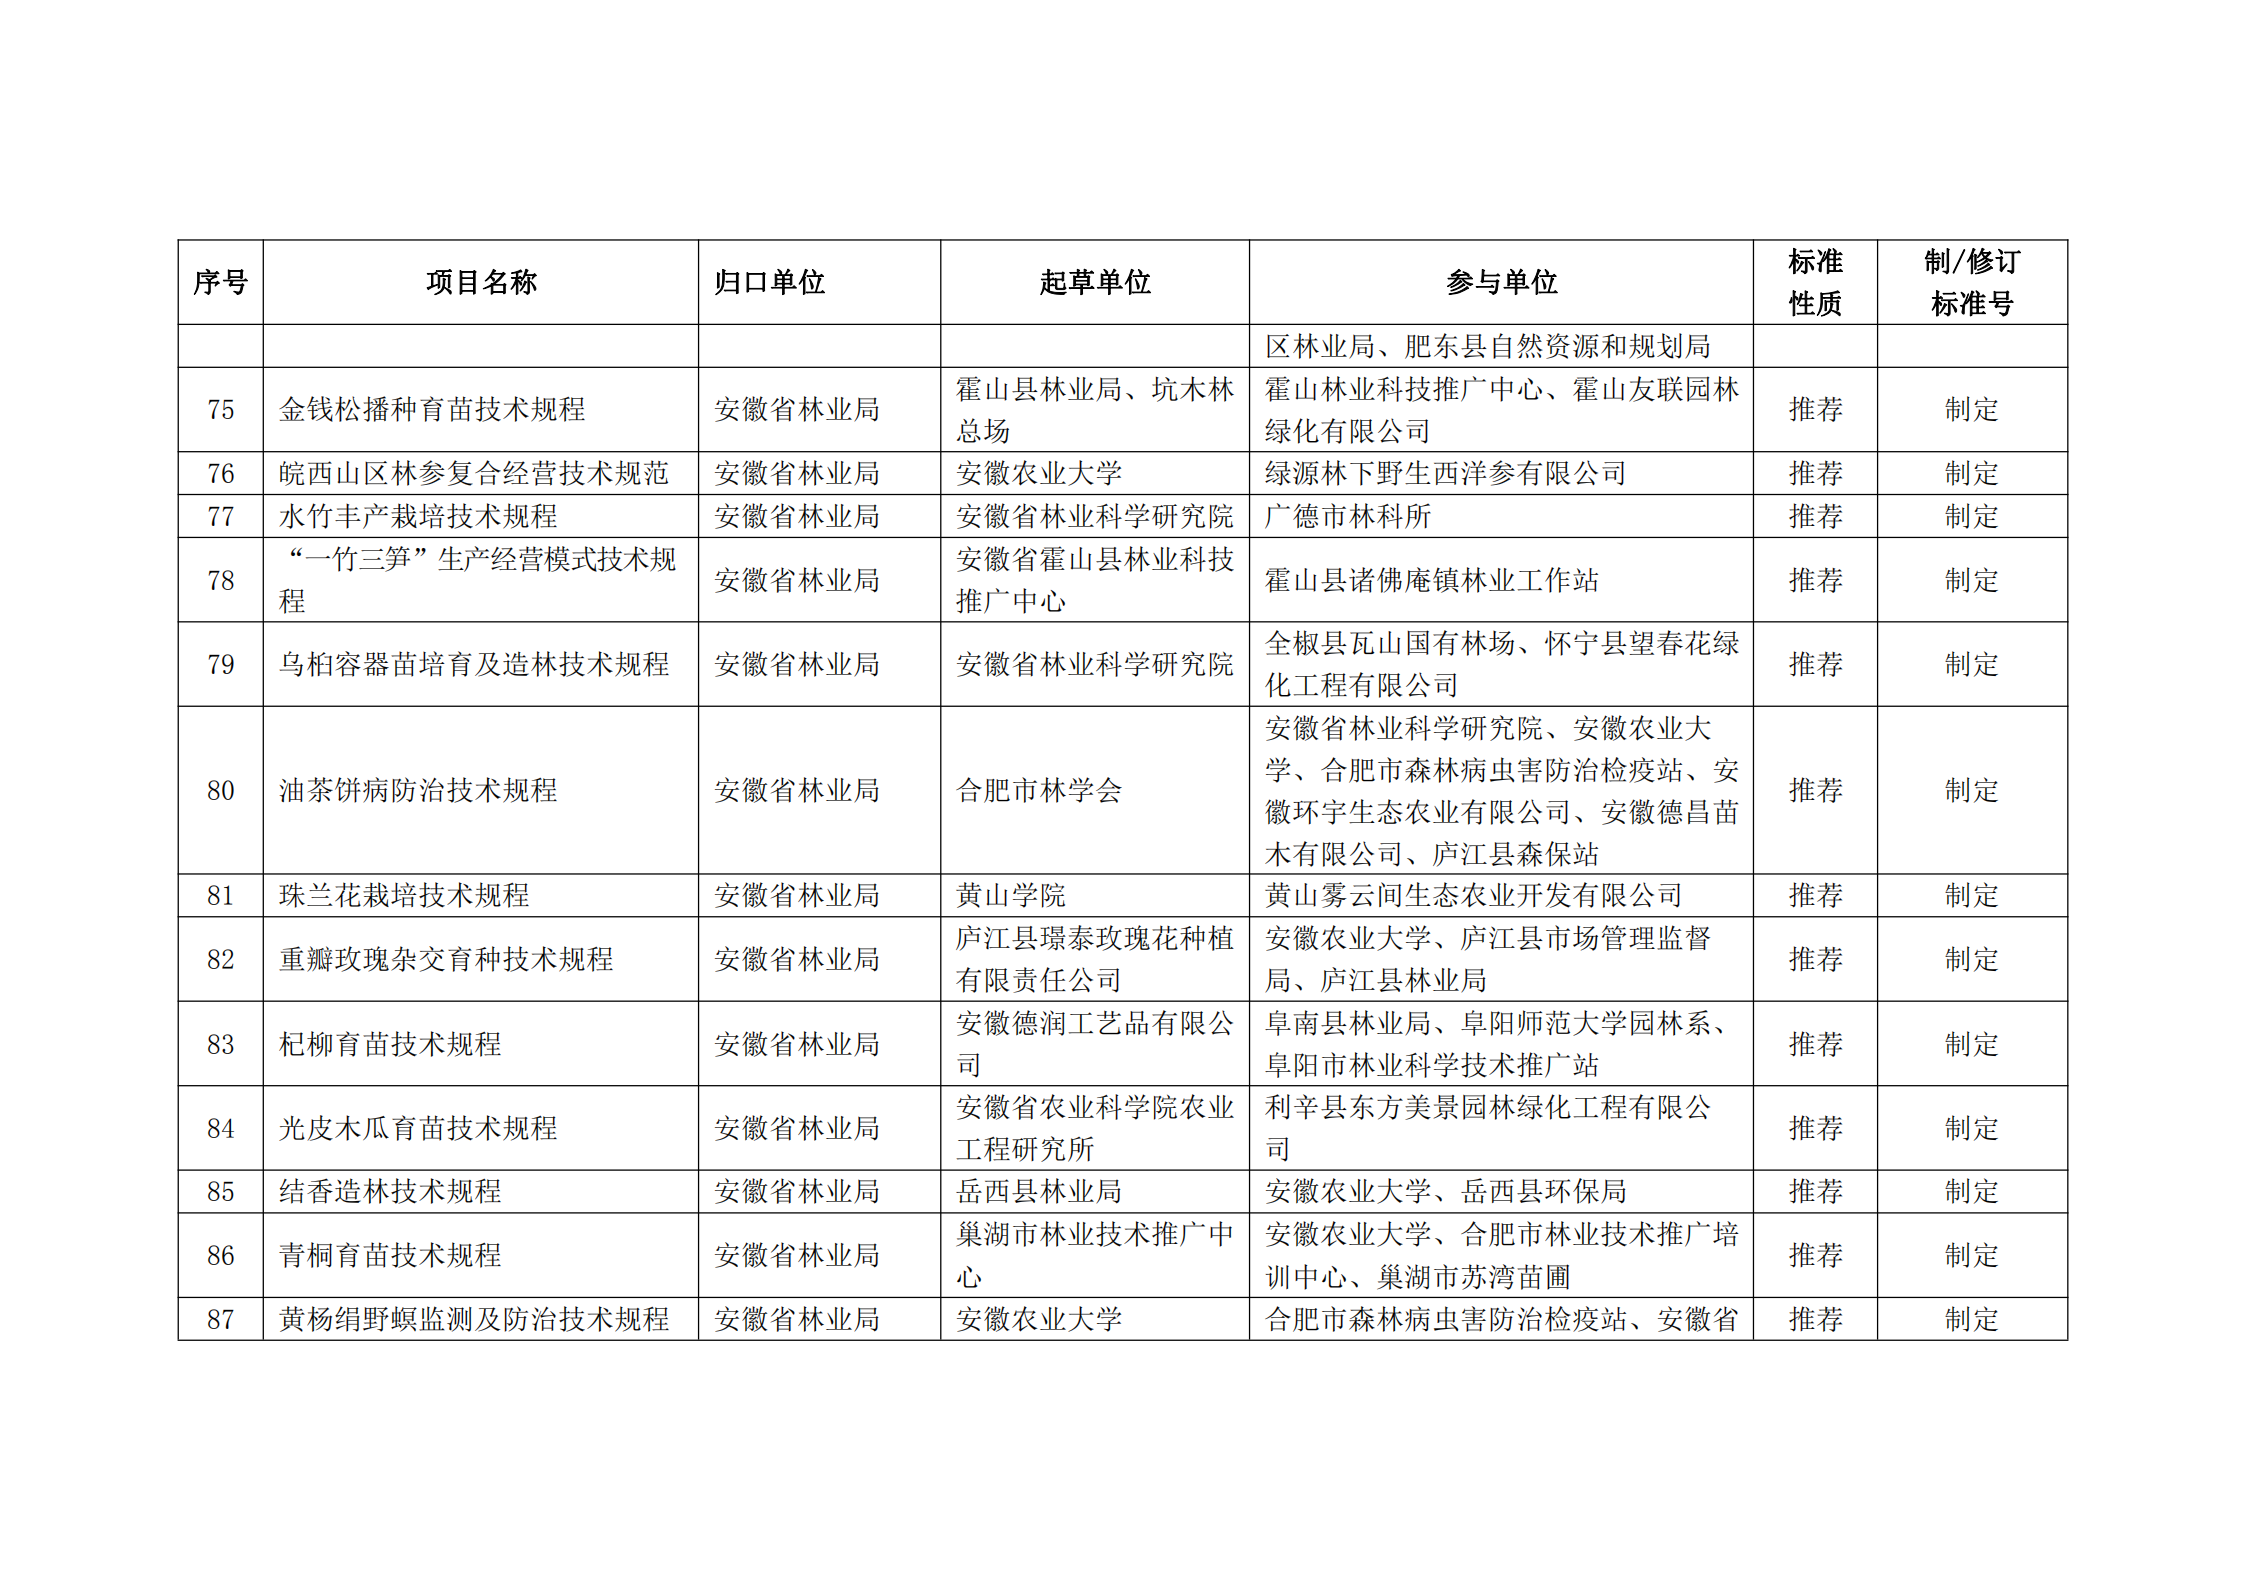 2020 年第二批安徽省地方标准制、修订计划项目汇总表(图9)